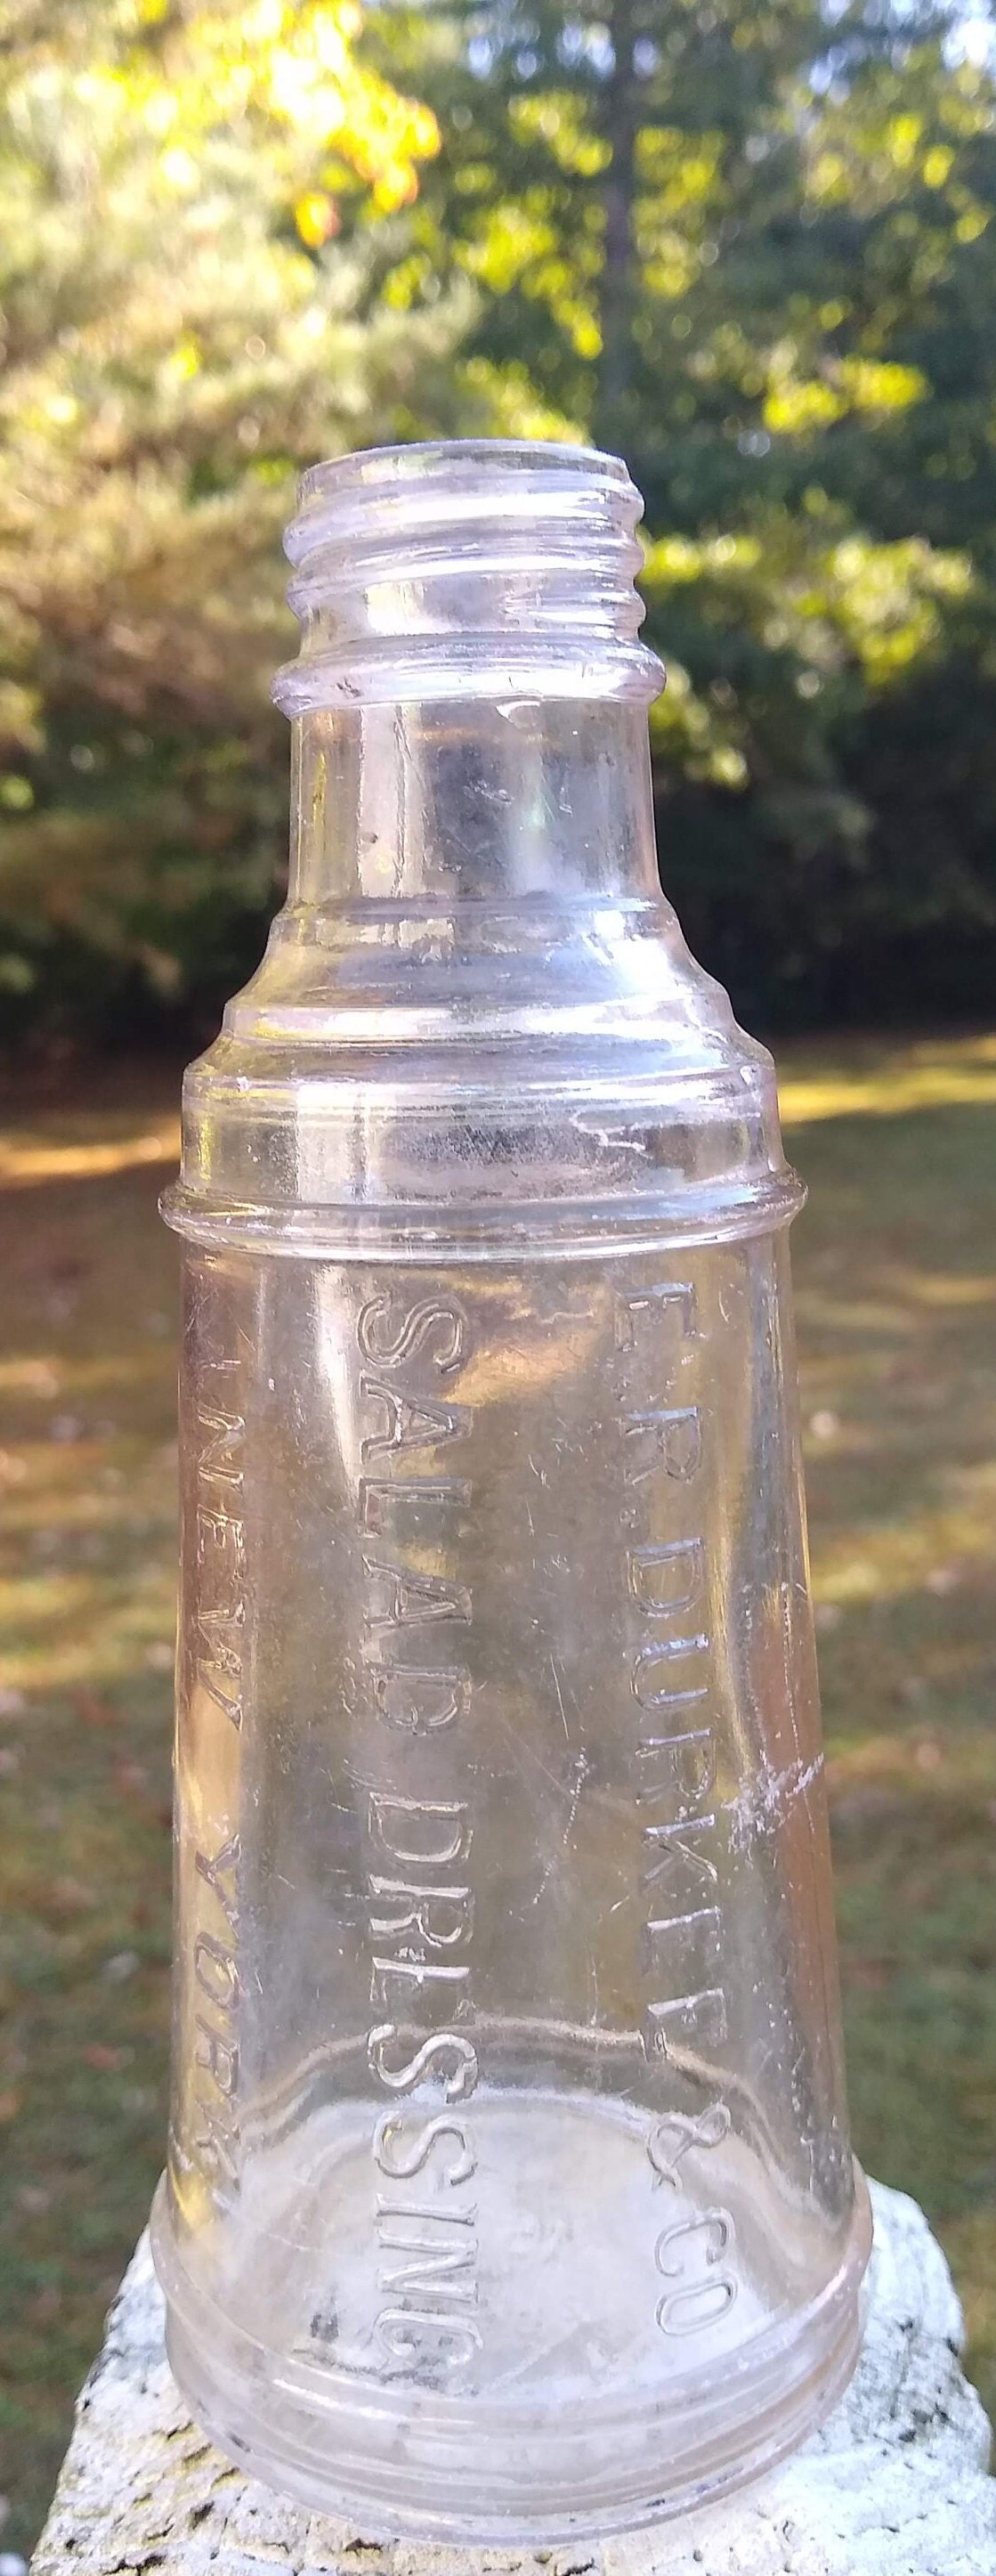 Hidden Valley Ranch Shaker Bottle Cup Plastic Pour Spout Salad Dressing  Mixer Vintage